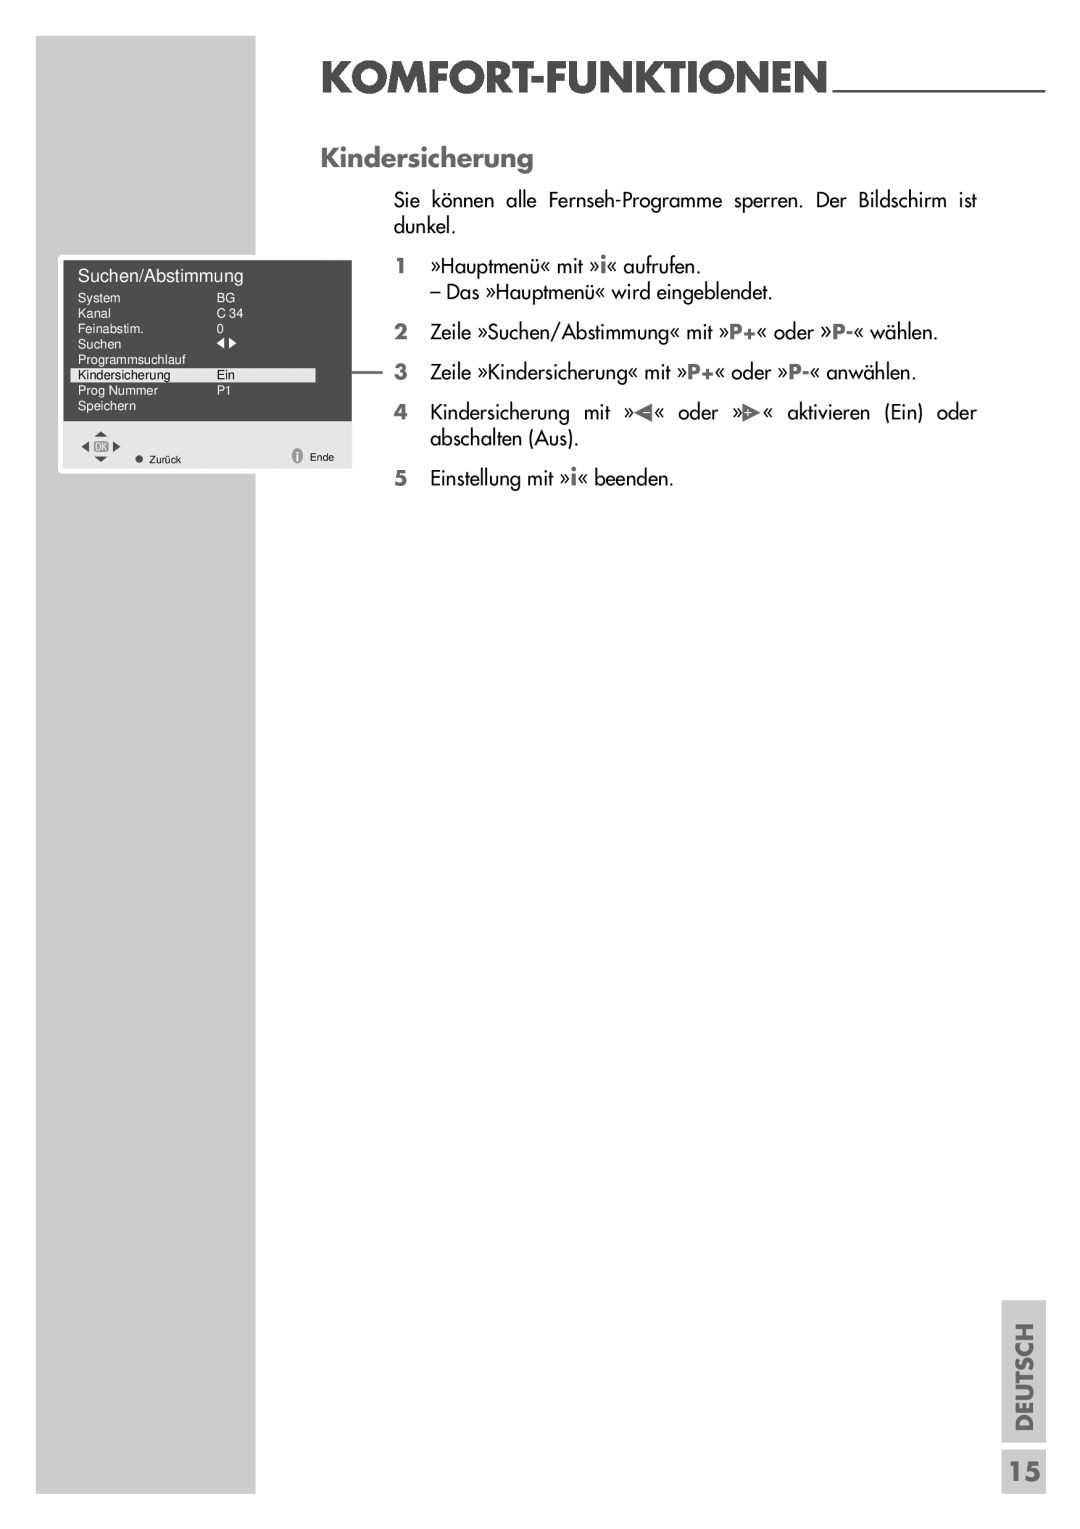 Grundig P37-4501 manual Kindersicherung, Komfort-Funktionen, Deutsch, Suchen/Abstimmung 